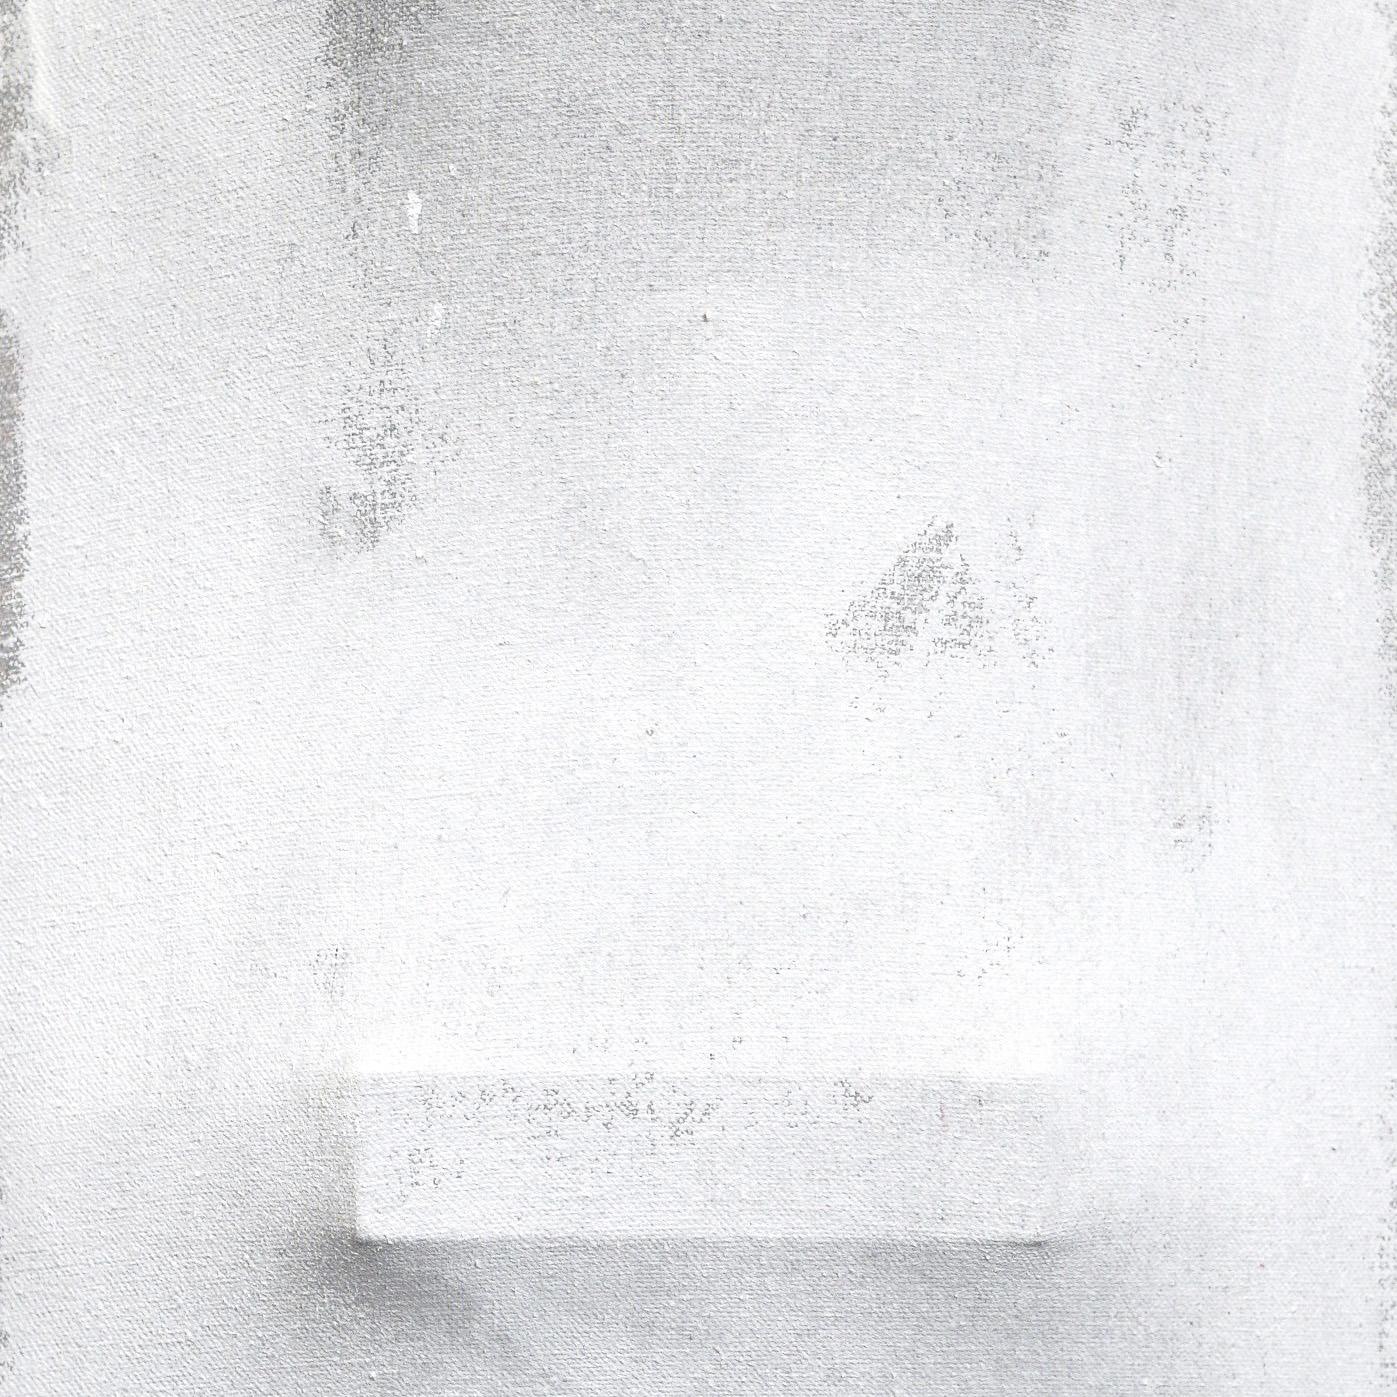 The Fortune Teller B - Original Abstraktes, minimalistisches, skulpturales Gemälde (Post-Minimalismus), Painting, von Len Klikunas